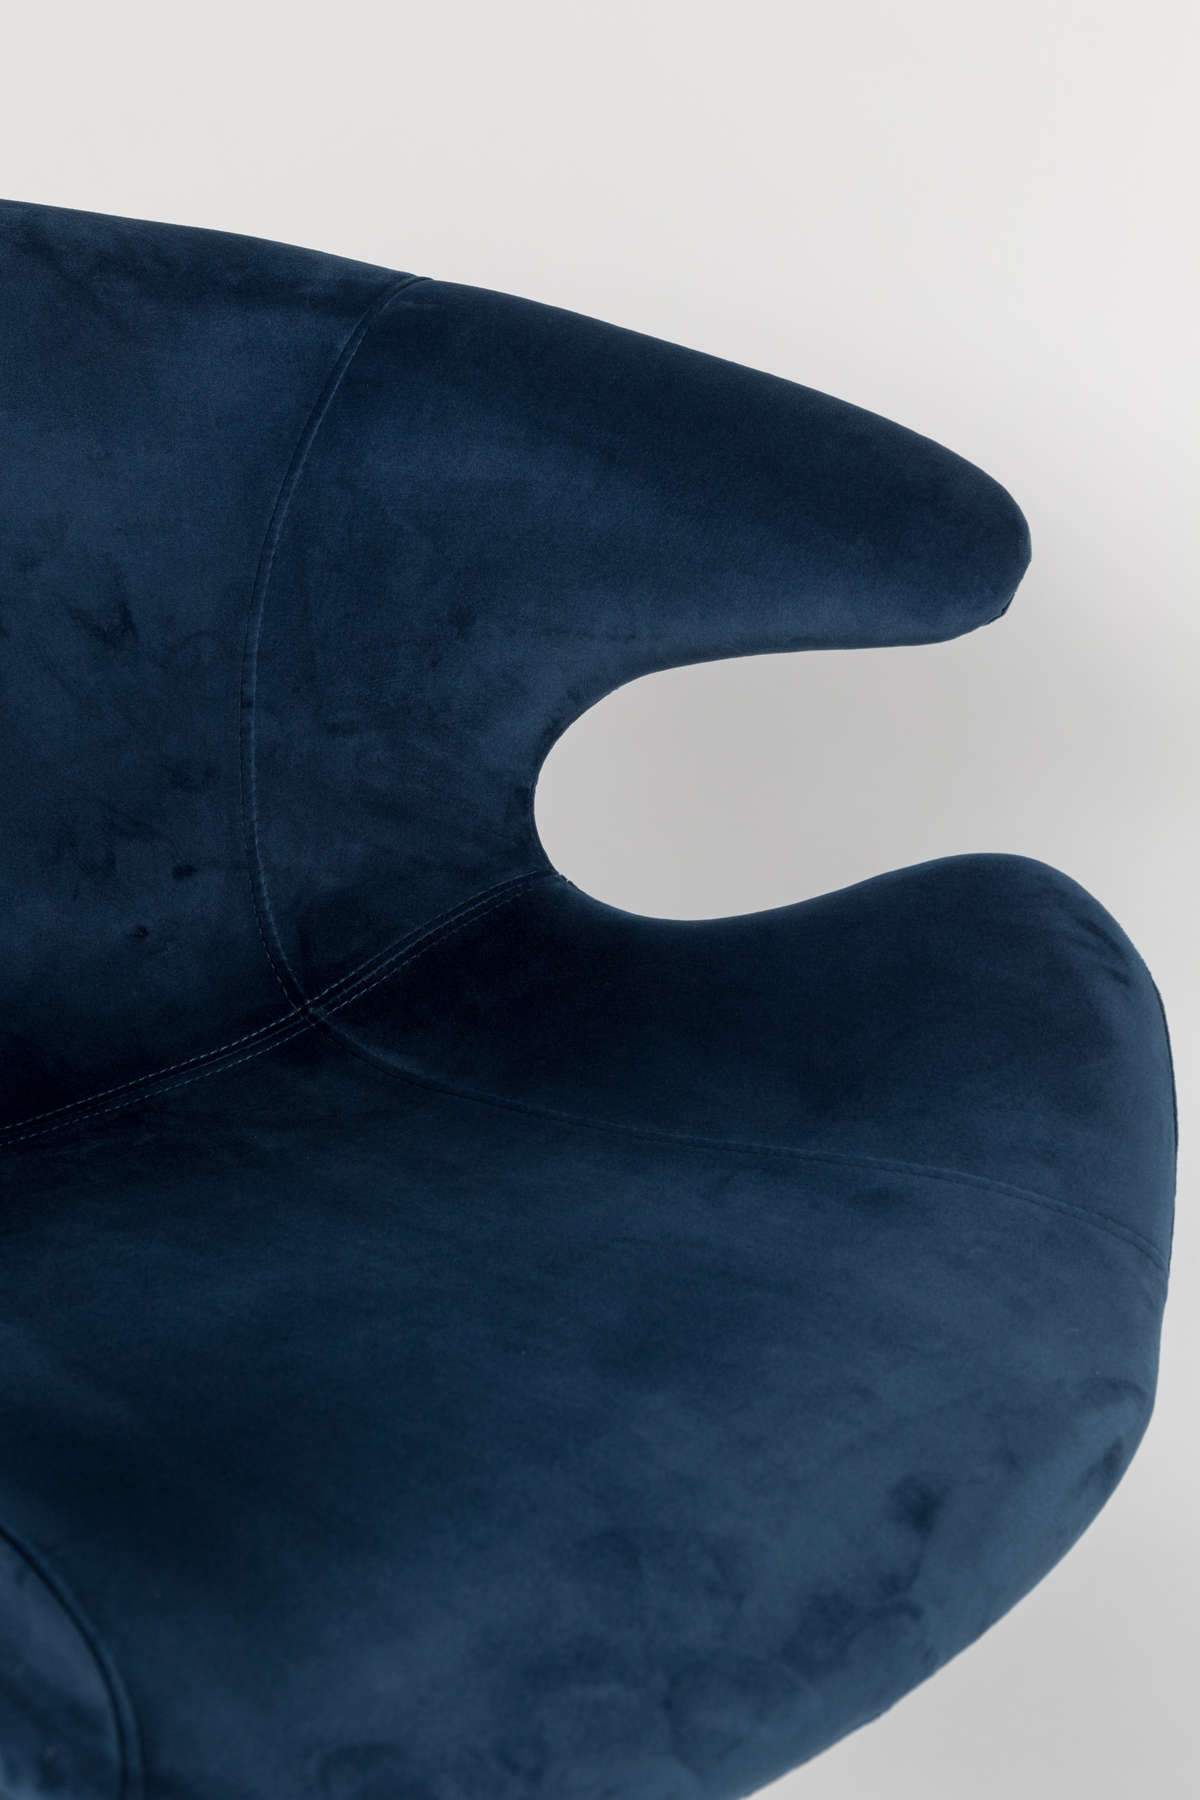 MIA armchair blue